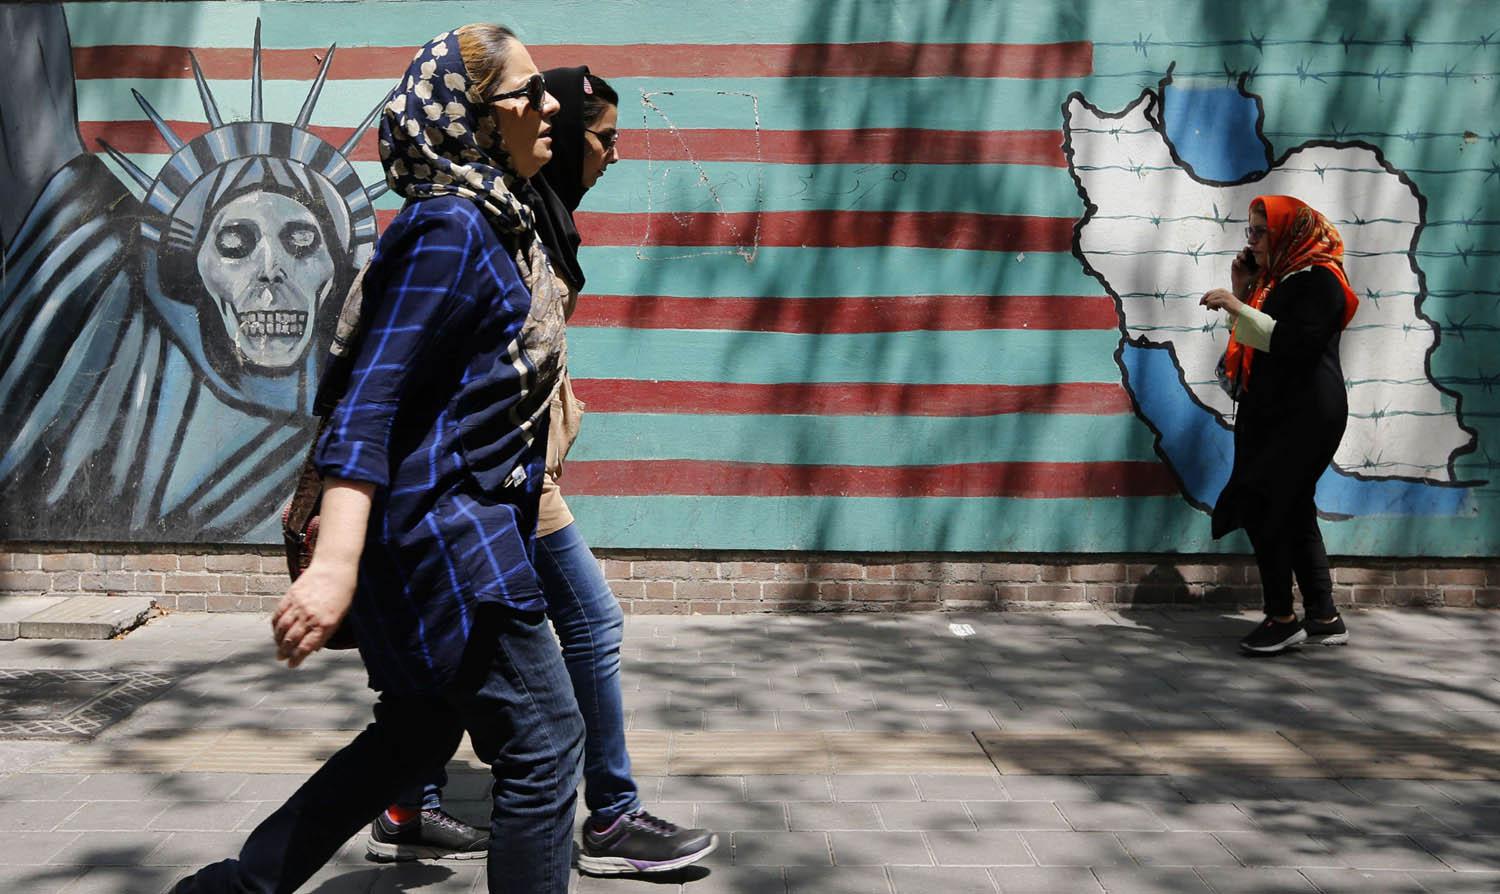 فتيات يمررن بجانب حائط عليه رسوم مناهضة للولايات المتحدة